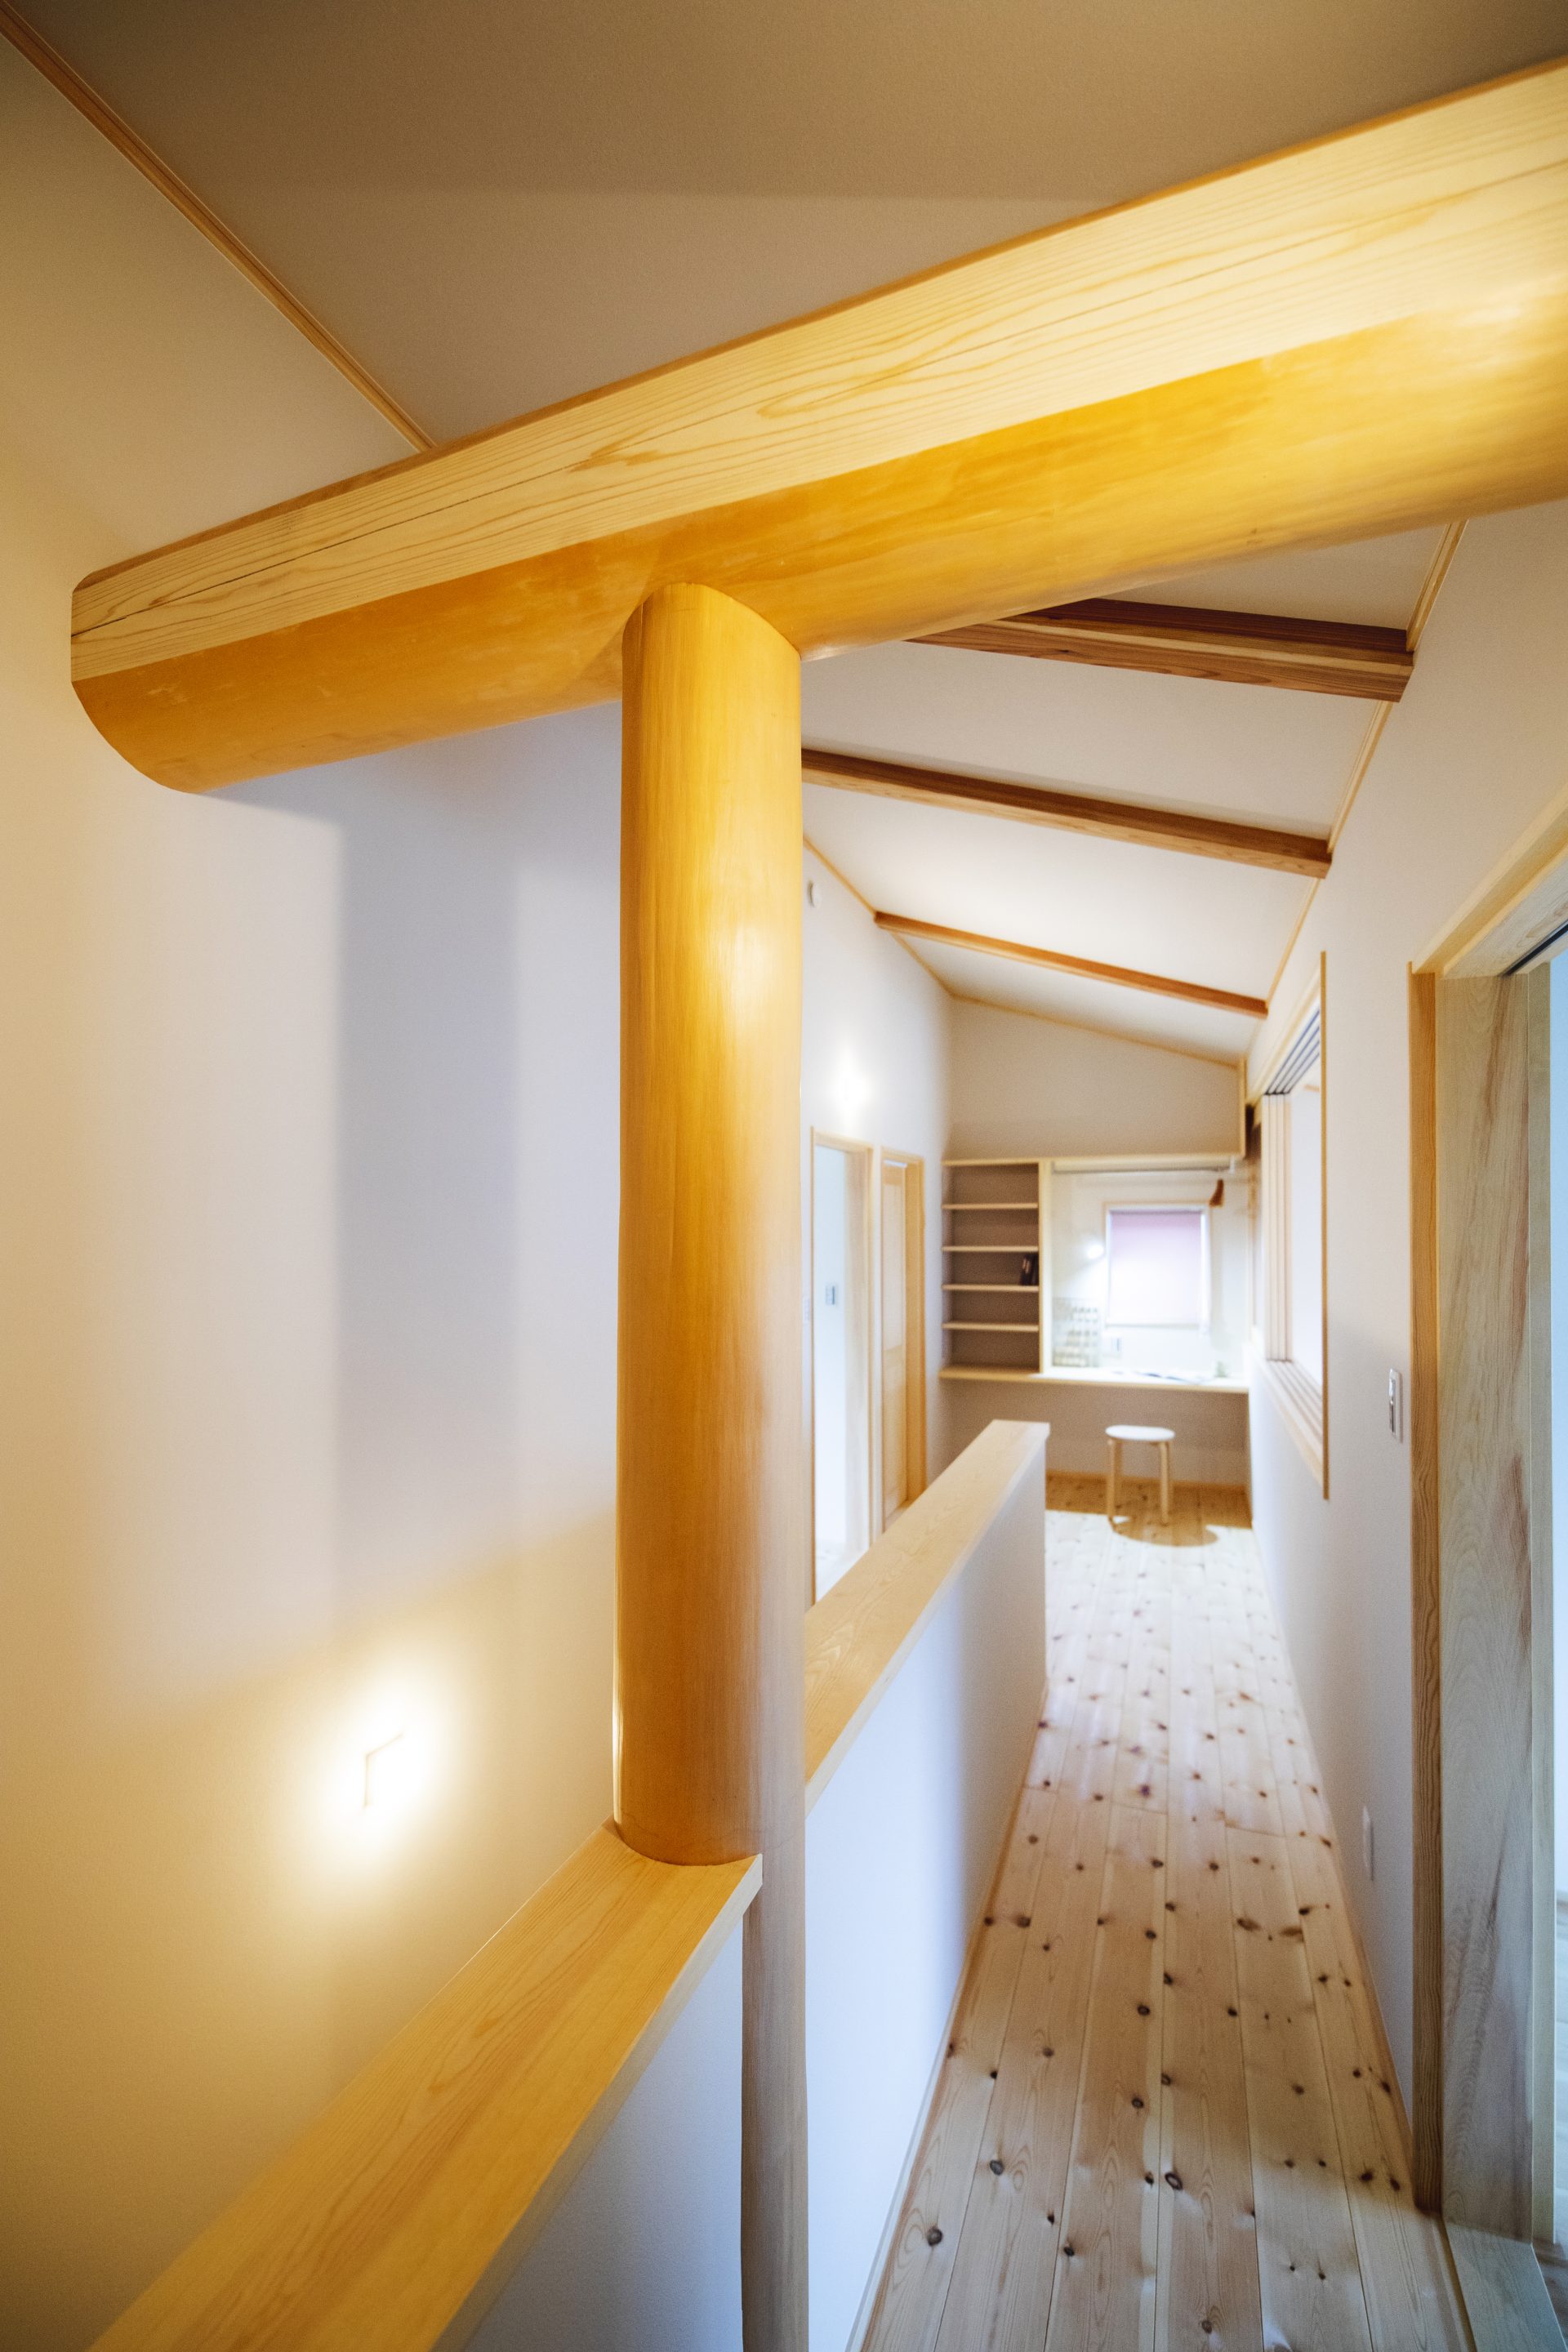 Căn nhà gỗ xây dựng theo lối kiến trúc Nhật Bản với 1 trệt 1 lửng đủ bình yên cho gia đình trẻ - Ảnh 11.